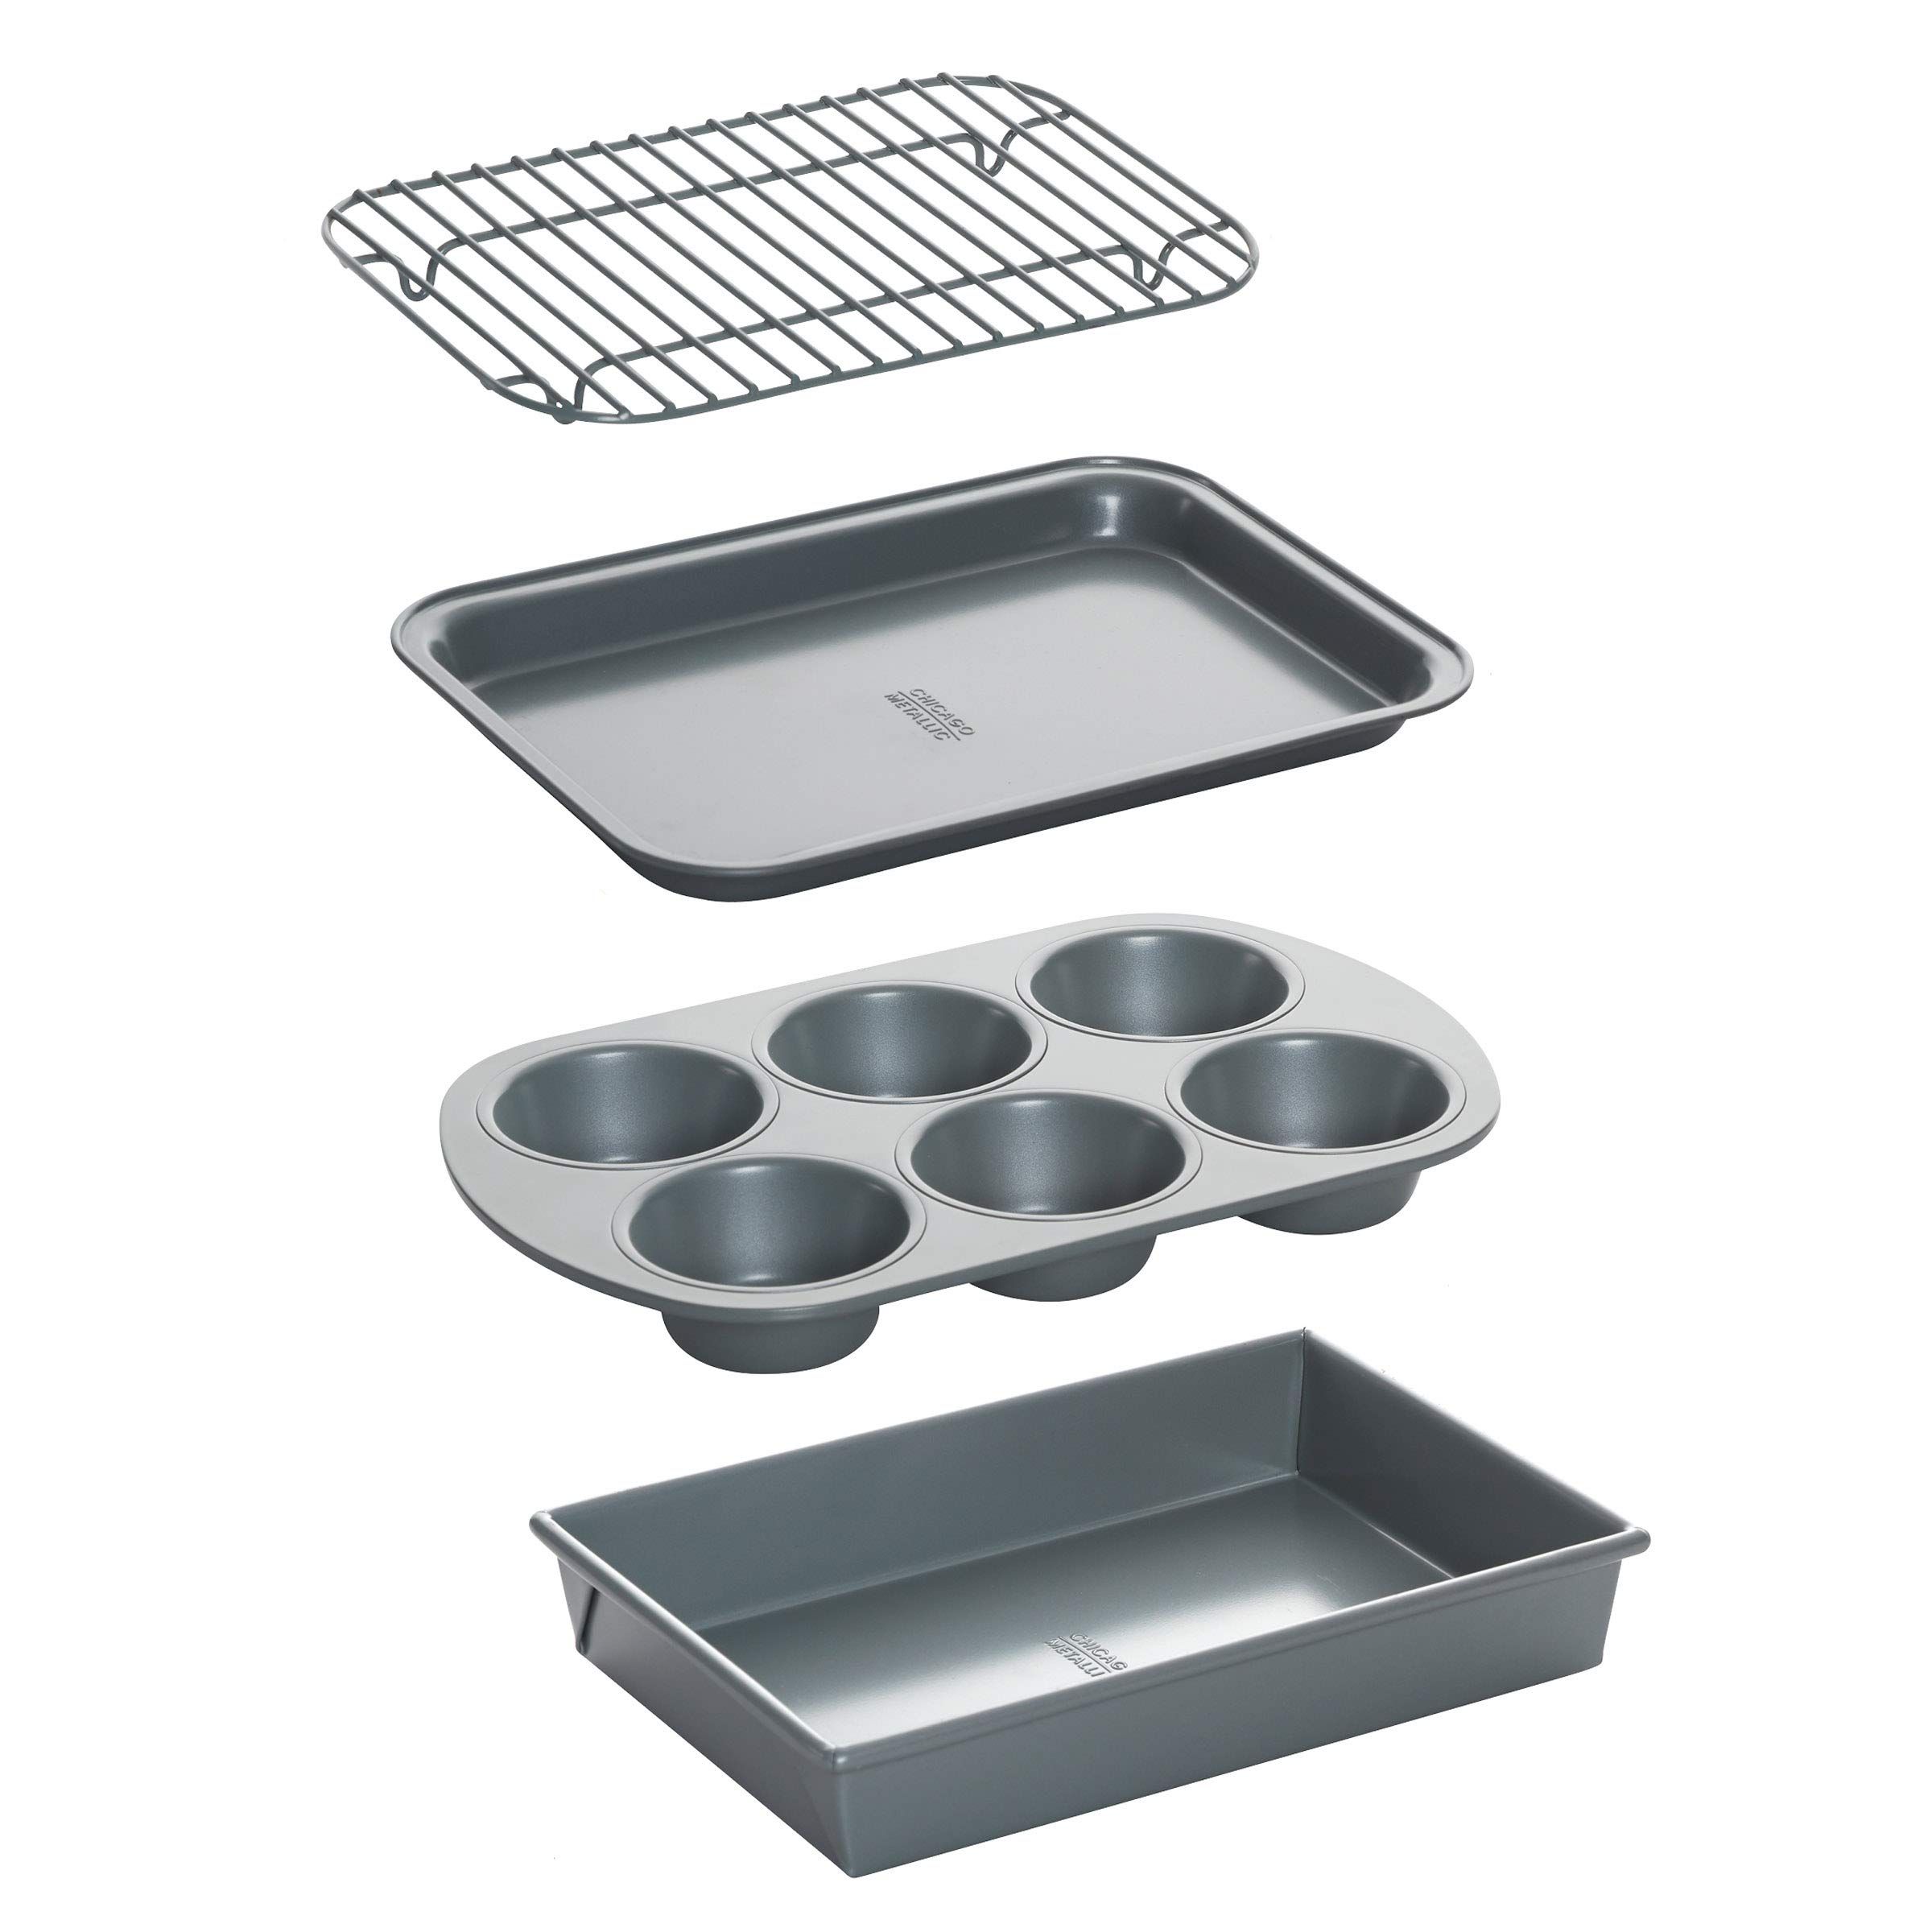 Chicago Metallic Non-Stick Toaster Oven Bakeware Set, 4-Piece, Carbon Steel | Amazon (US)